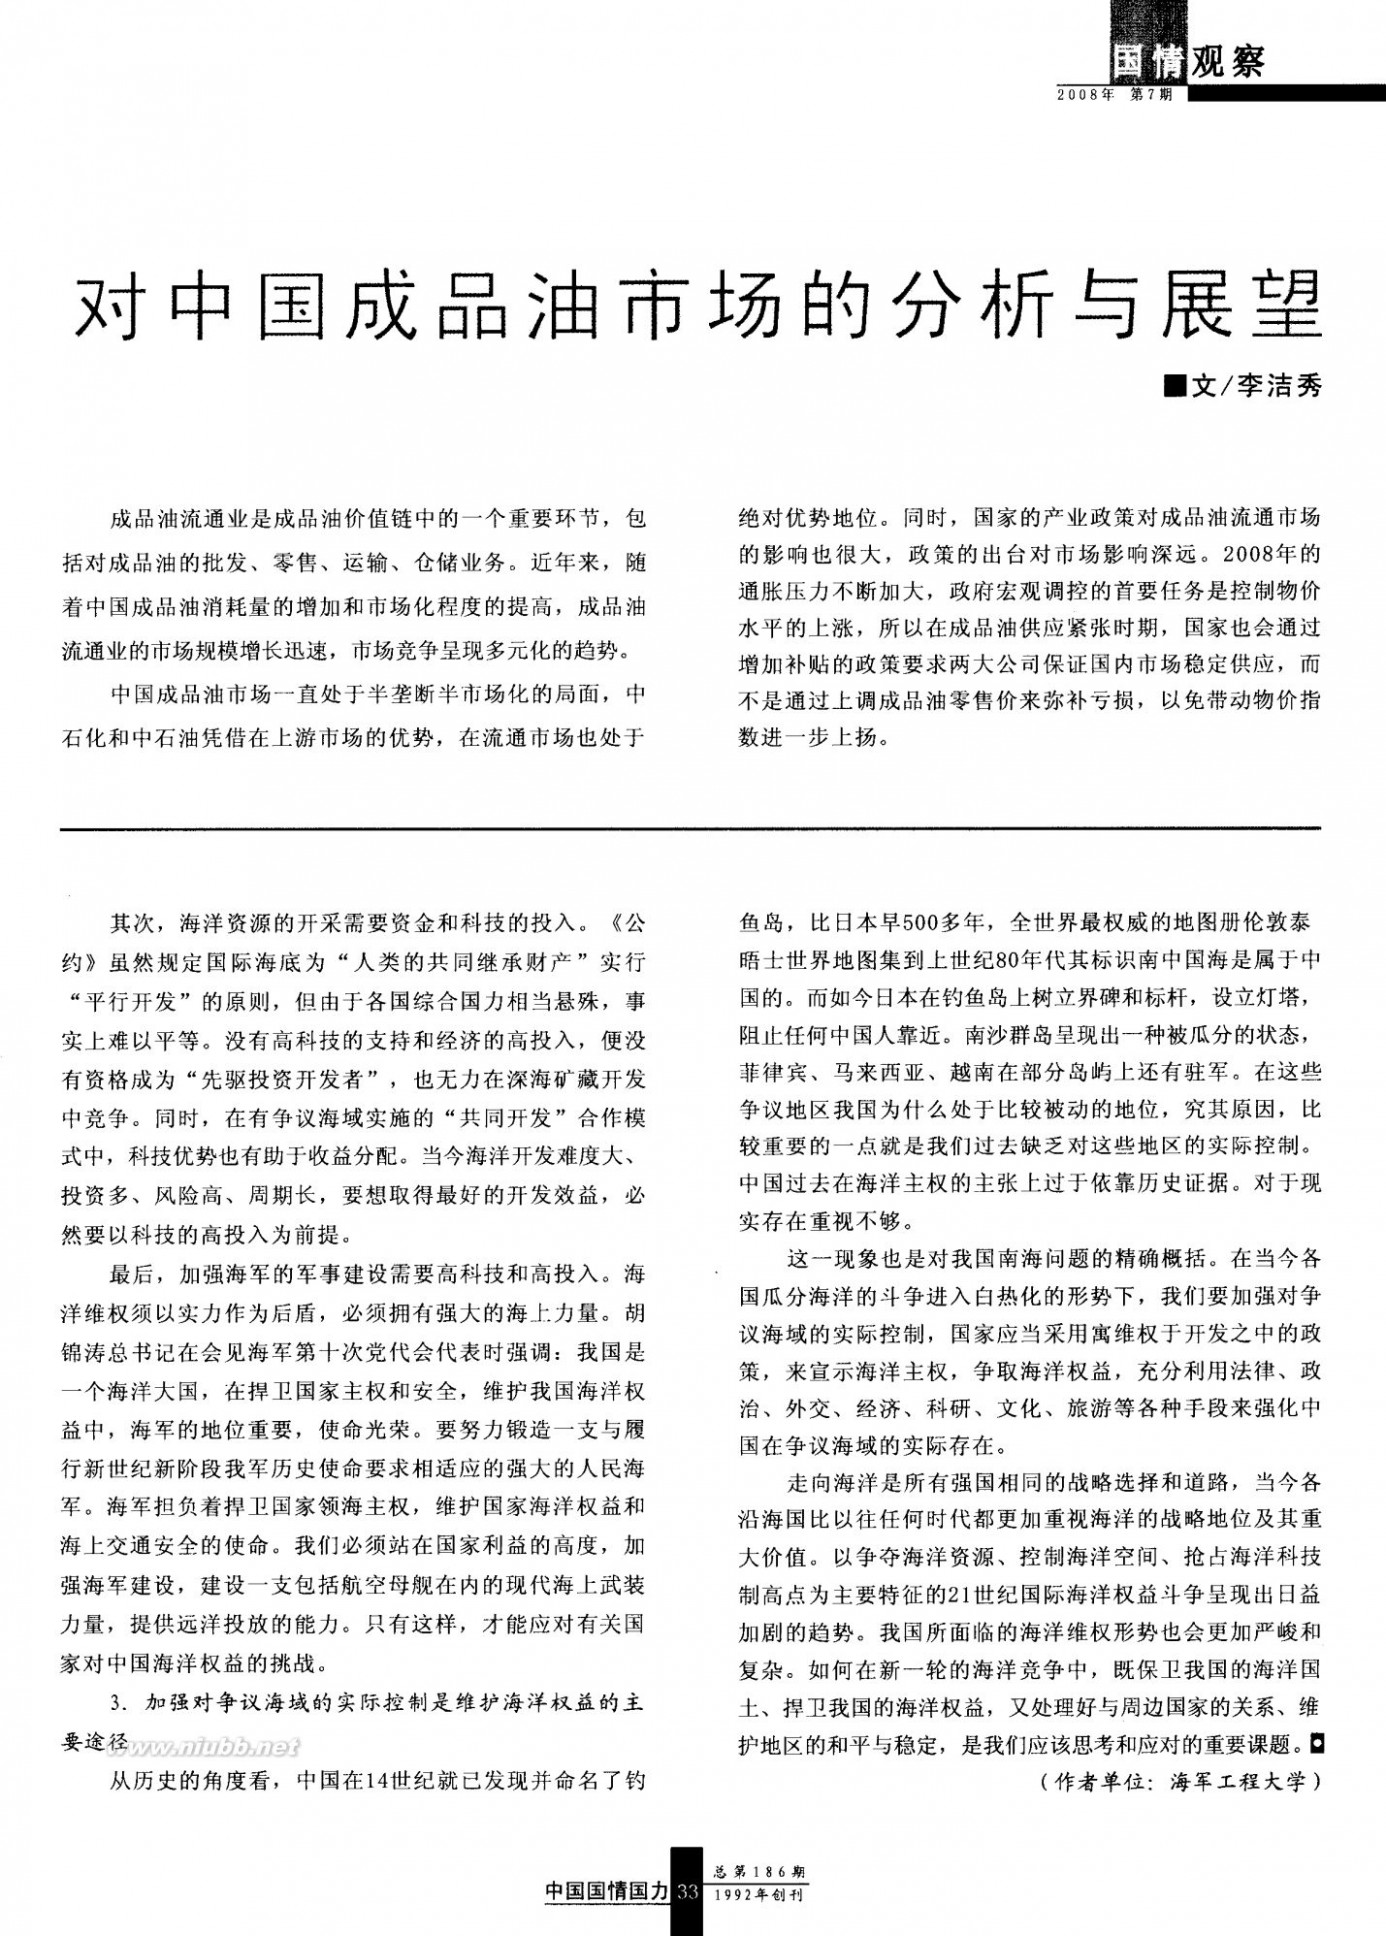 中国国情国力 维护我国海洋权益的策略思考《中国国情国力》 2008年第7期